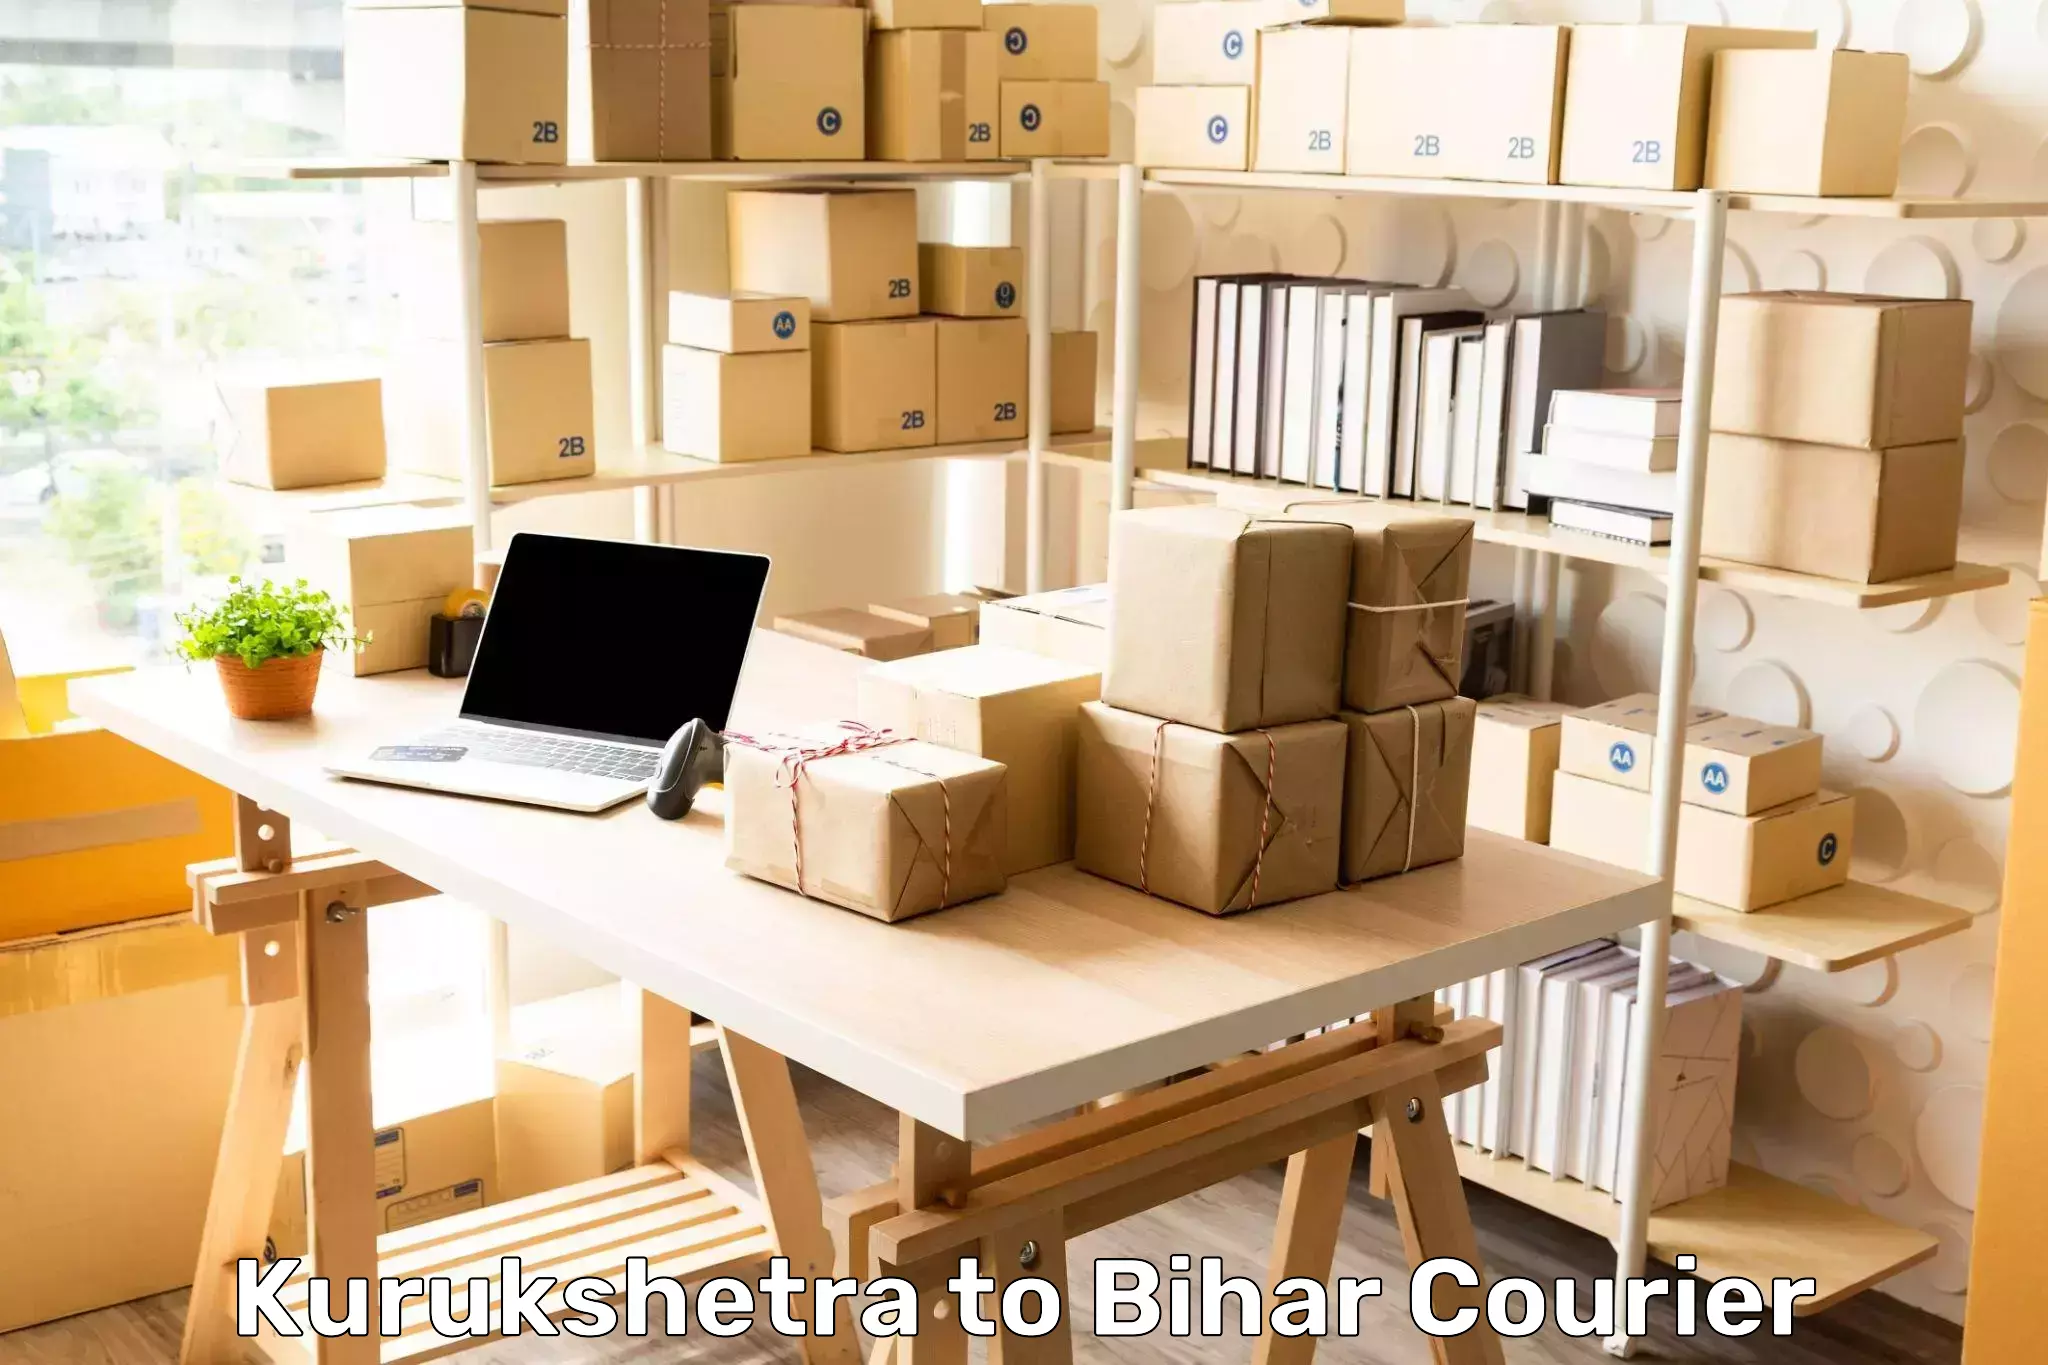 Courier tracking online in Kurukshetra to Barhiya